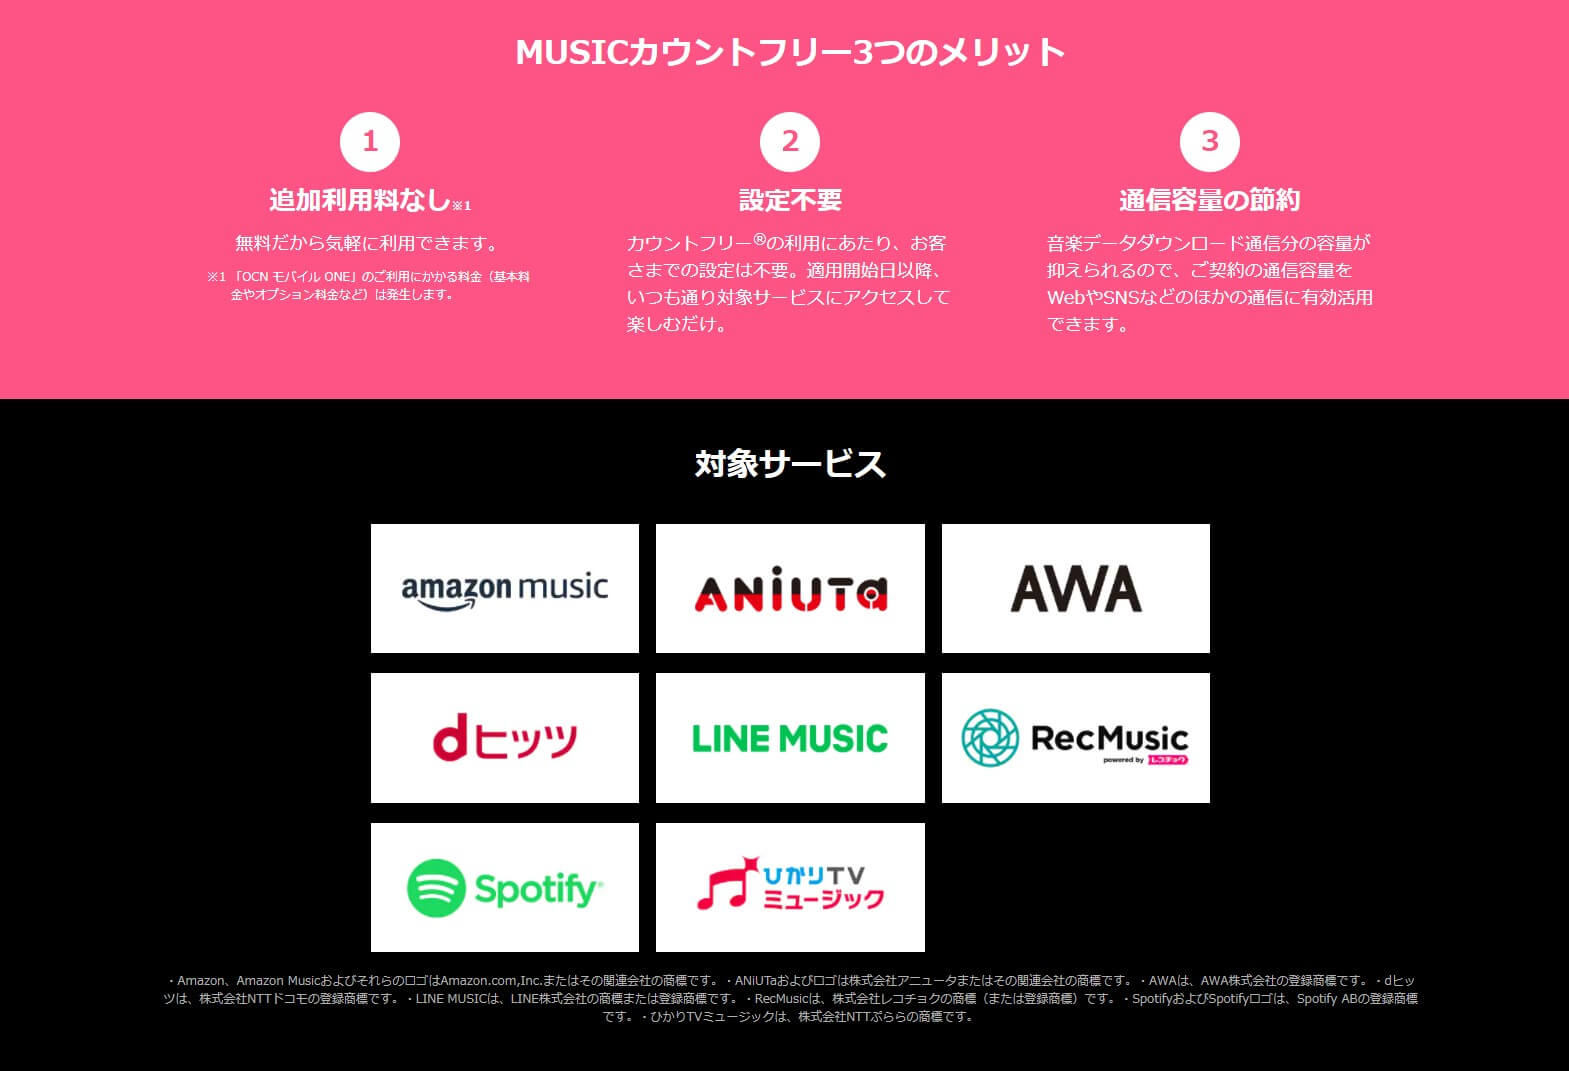 Amazon MusicはOCNモバイルONEのMUSICカウントフリーに対応している